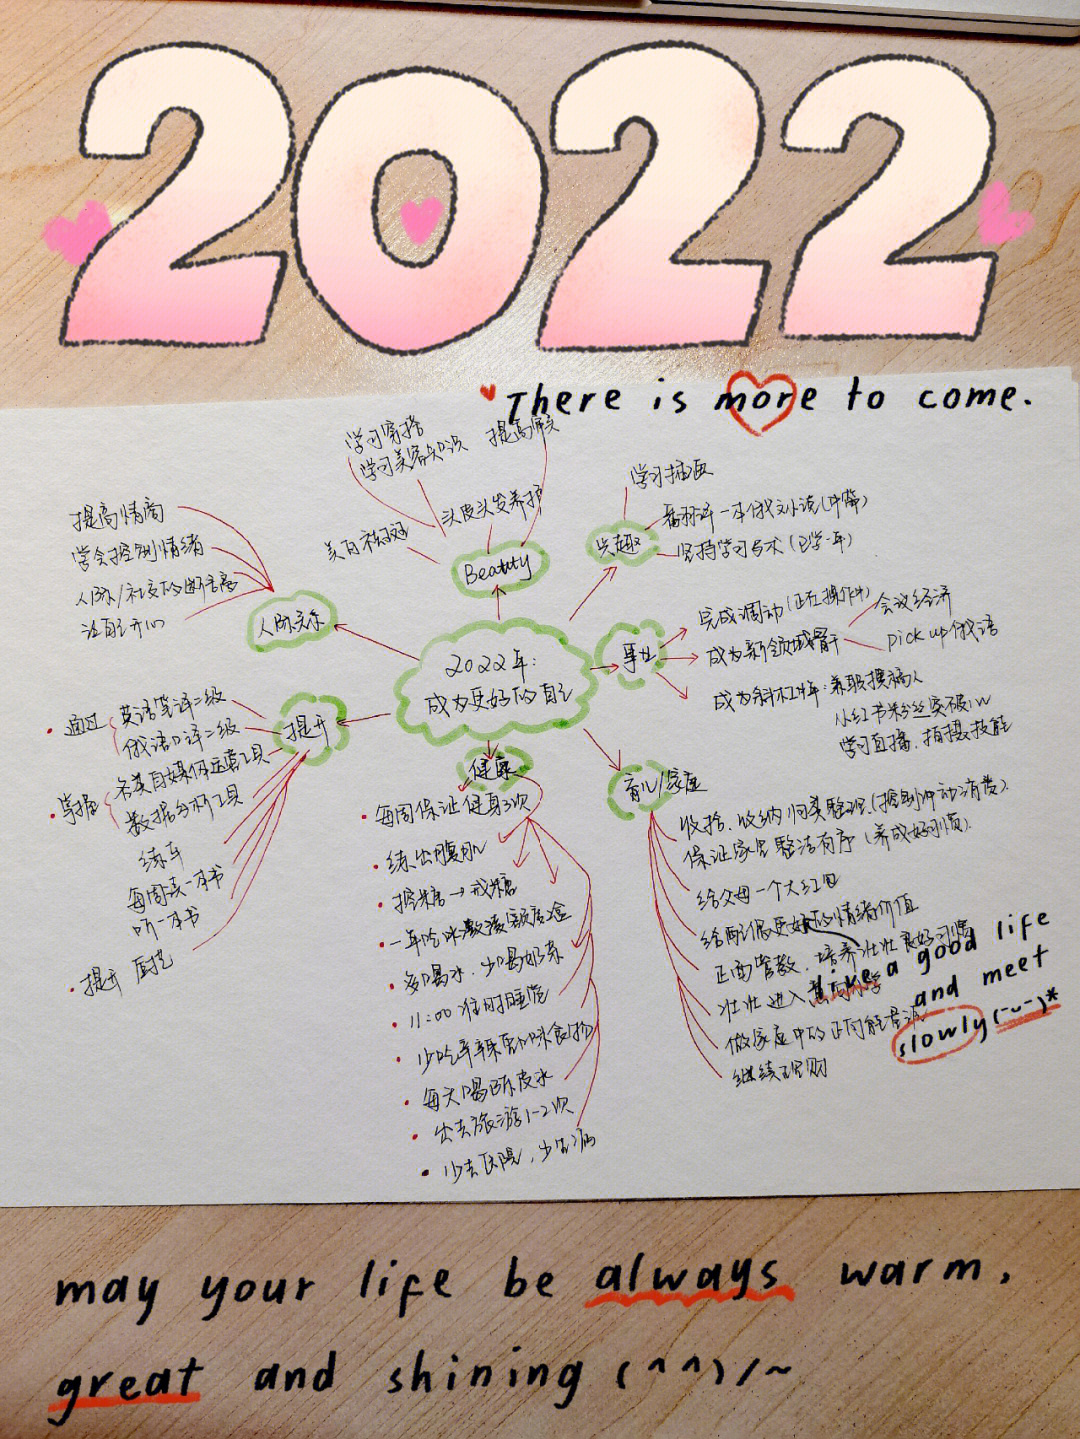 2022年目标清单我要用这一年来提升自己